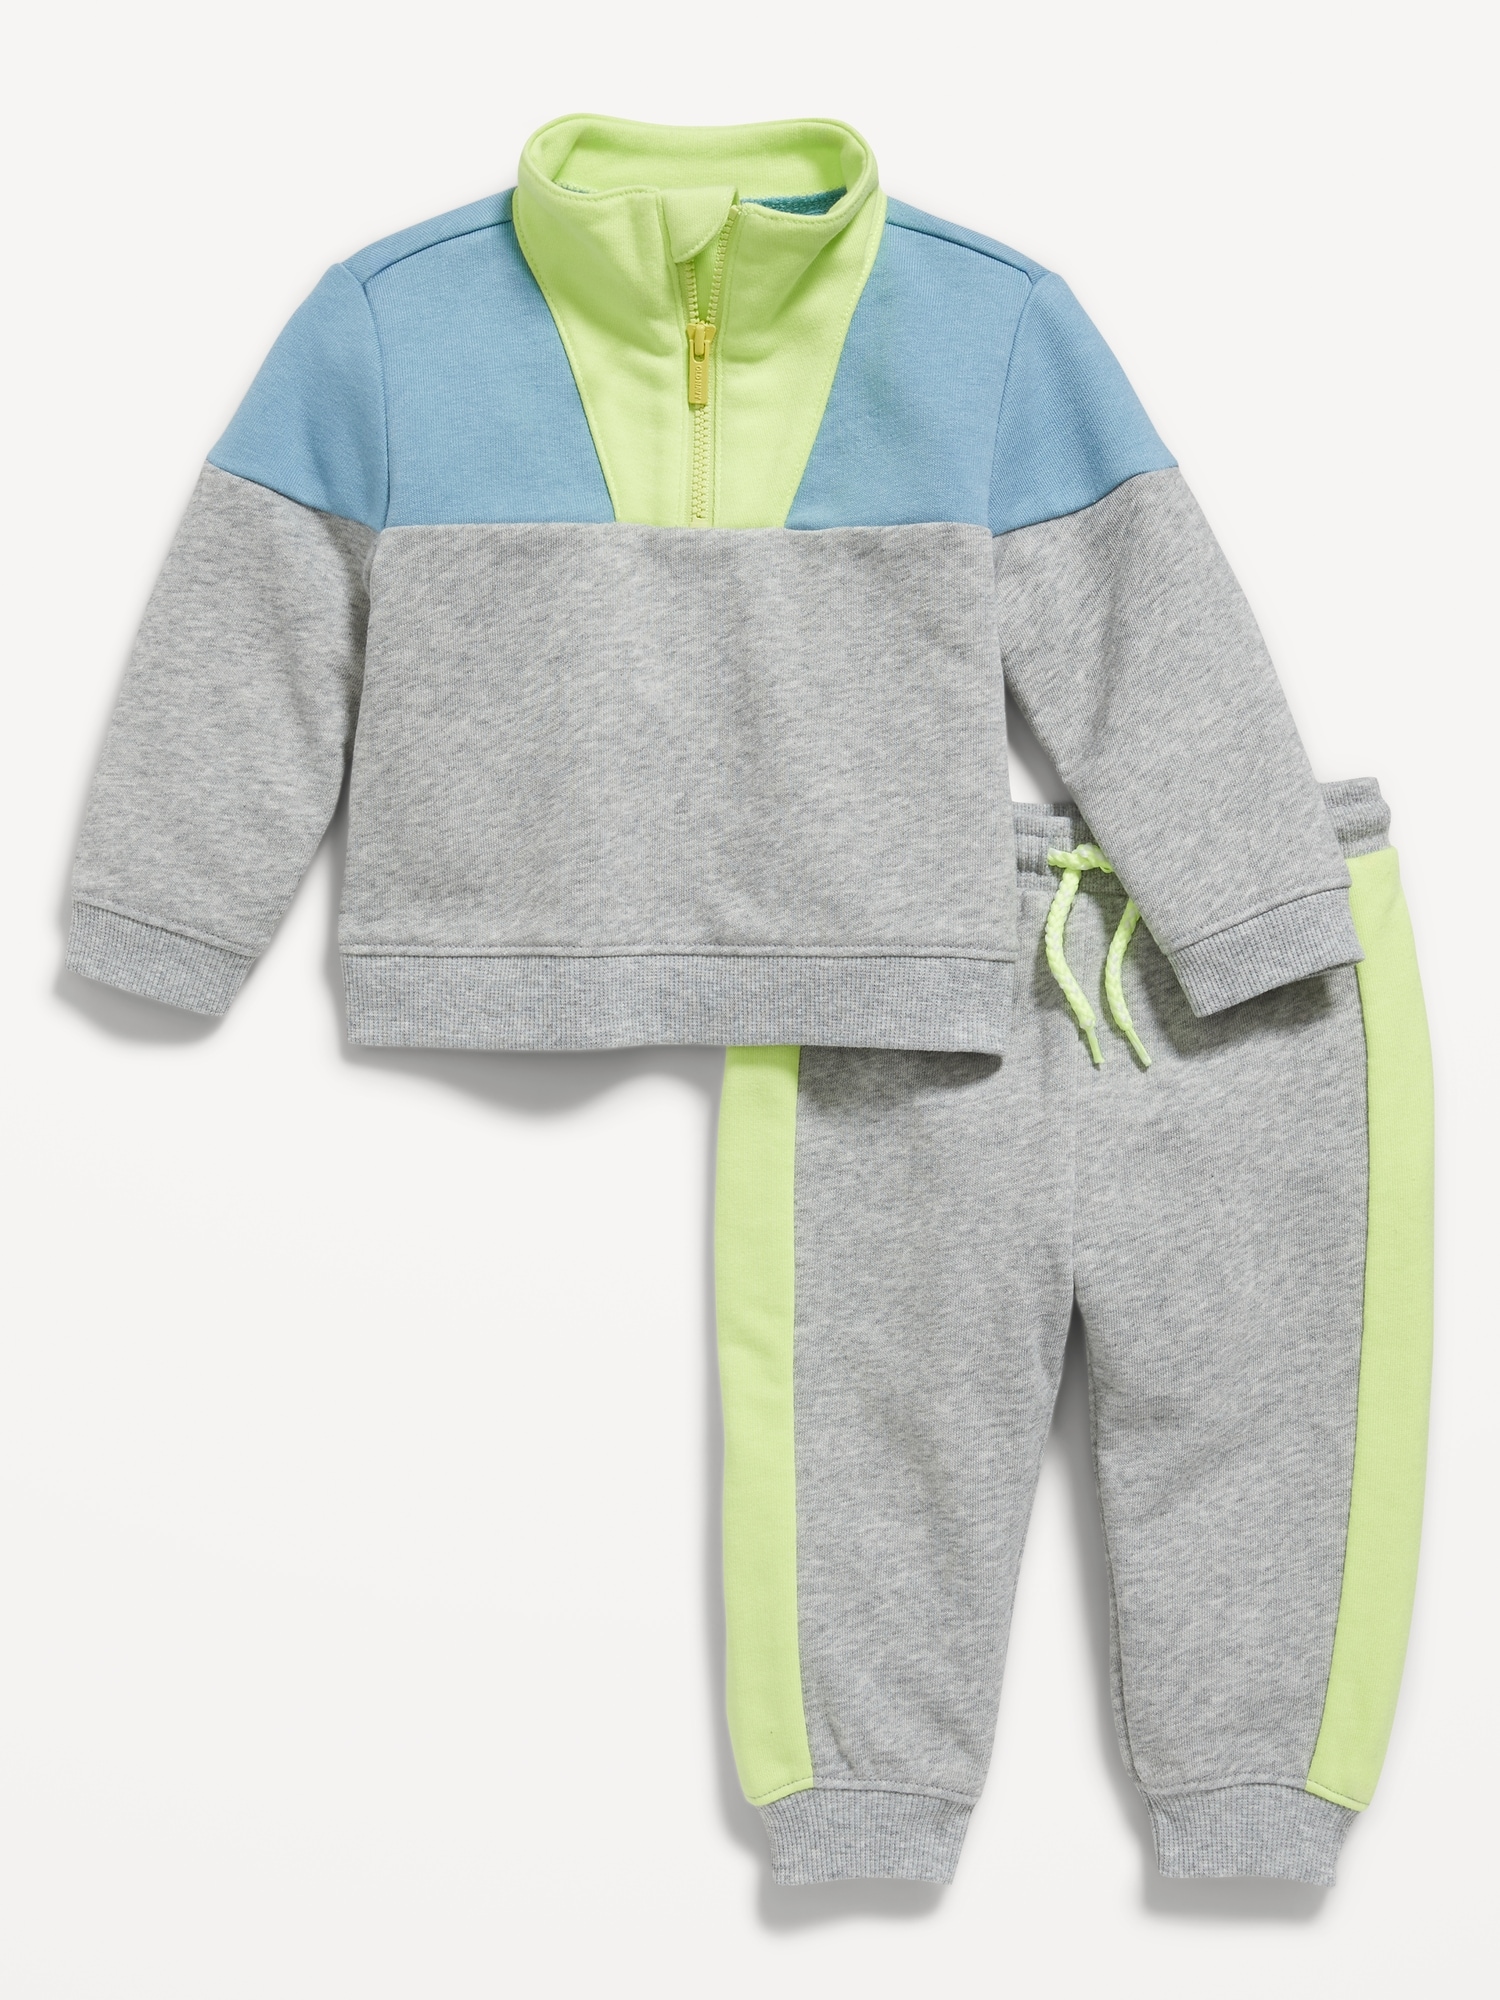 Color-Block Quarter-Zip Sweatshirt and Sweatpants Set for Baby